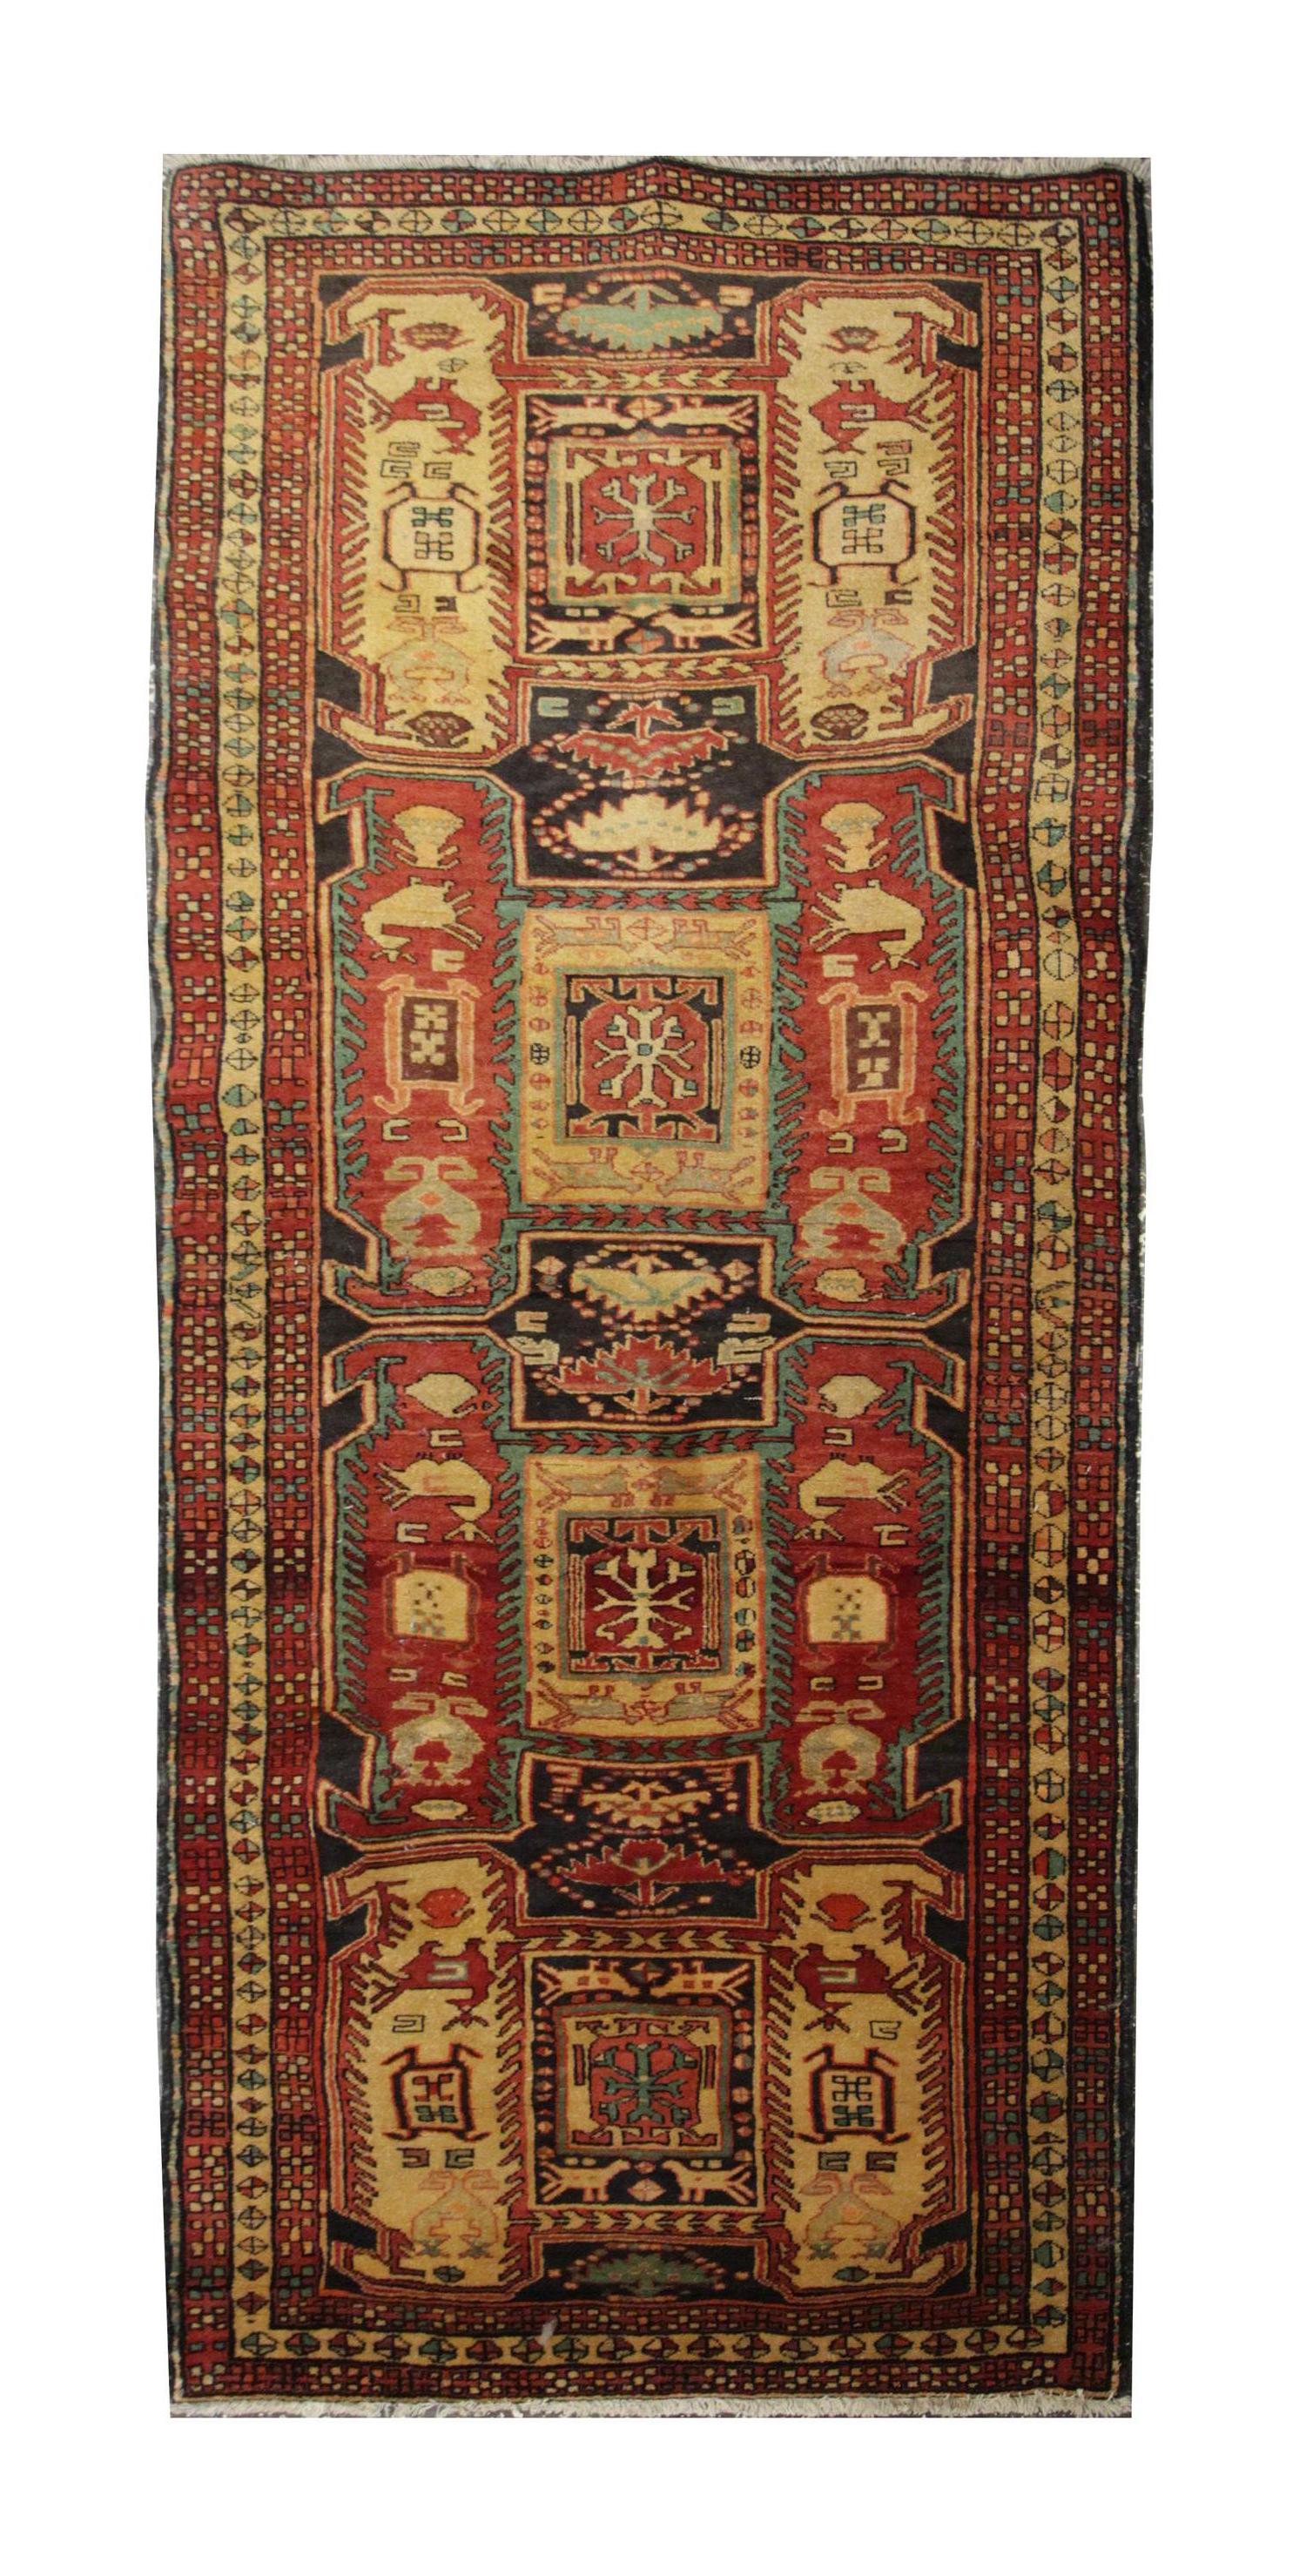 Ein hervorragendes Beispiel für die kaukasische Orientteppich-Knüpfung aus der kasachischen Region von Aserbaidschan. Obwohl diese goldbraunen, gemusterten Teppiche aus der Ferne wie ein All-Over-Teppich wirken, hat dieser Webteppich eine große